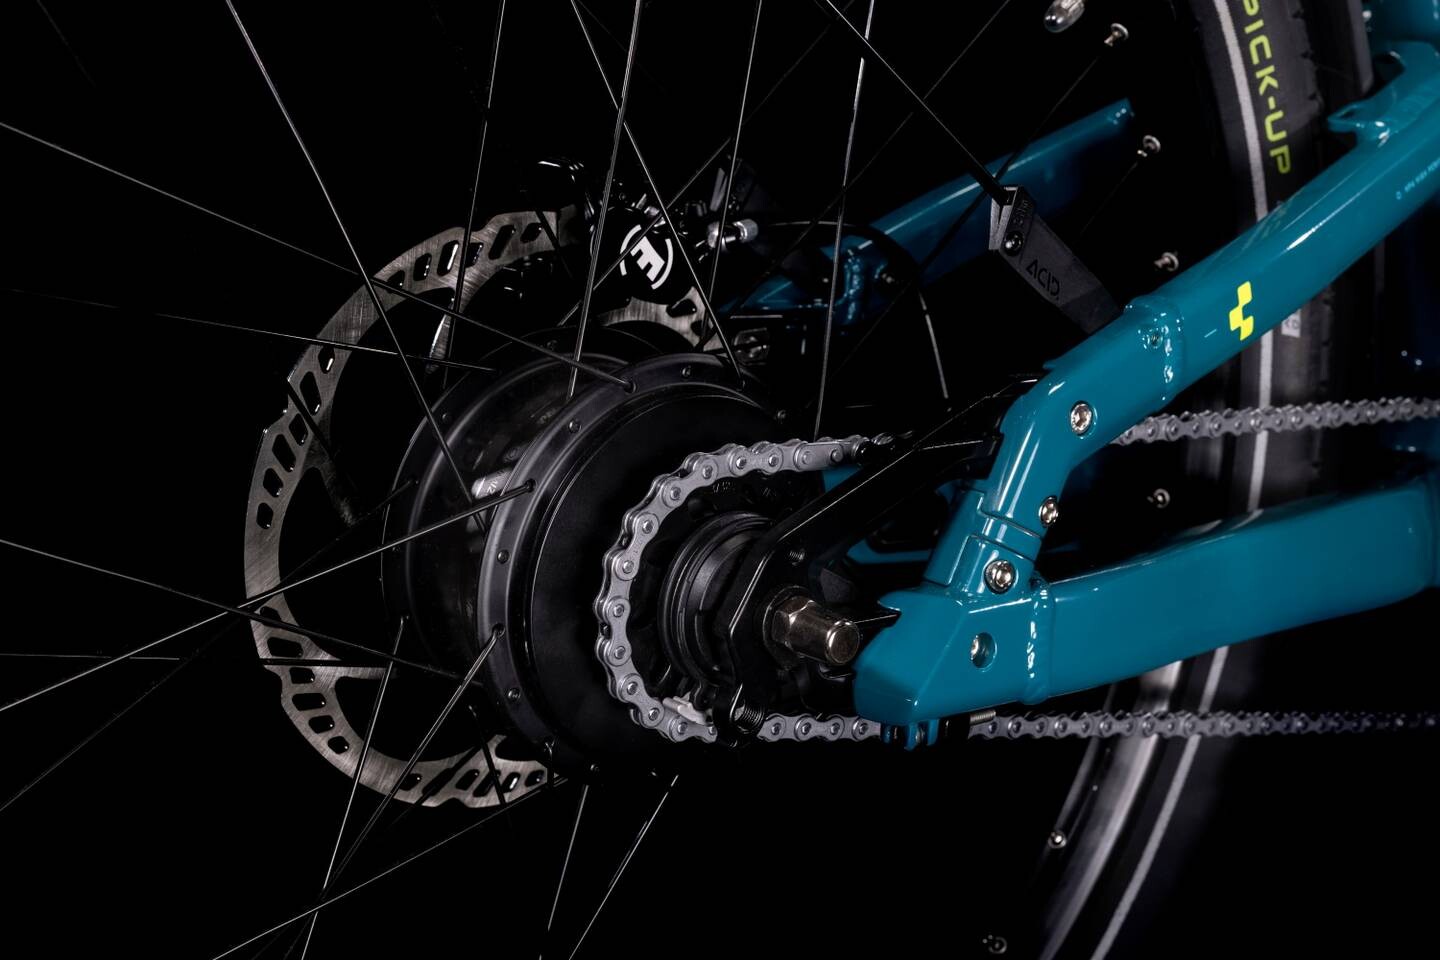 2022 Cube Cargo Hybrid 500 Electric Bike in Blue gears